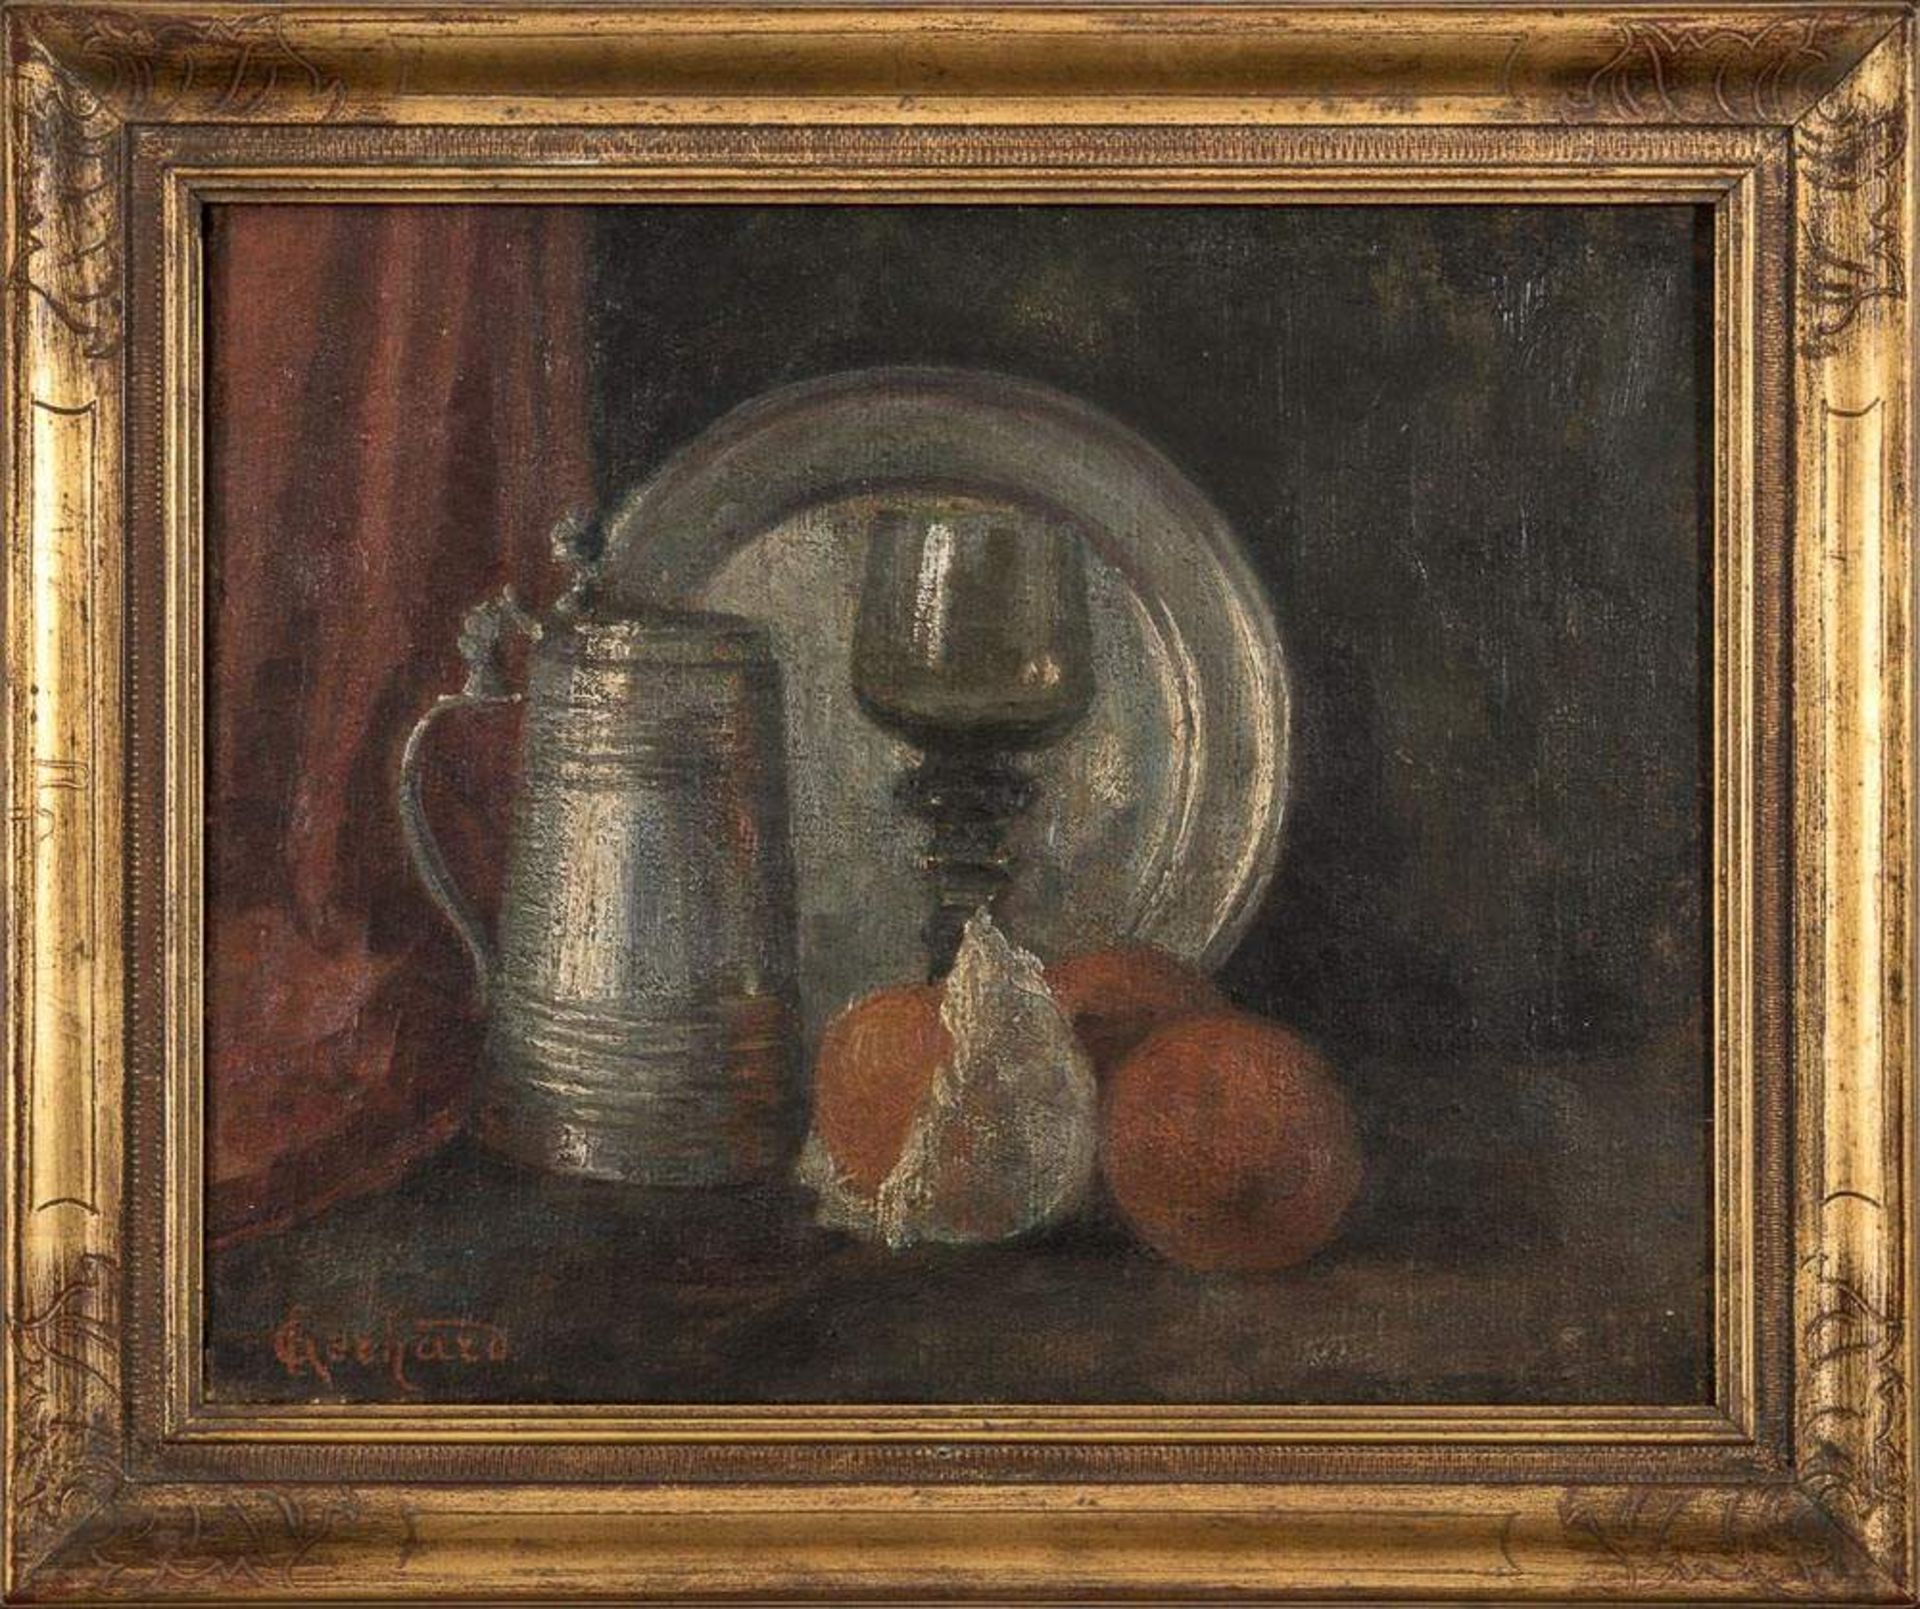 "Stilleben mit Zinngeschirr". Gemälde, Öl auf Leinwand, signiert "C. Gerhard". Um 1900/20.